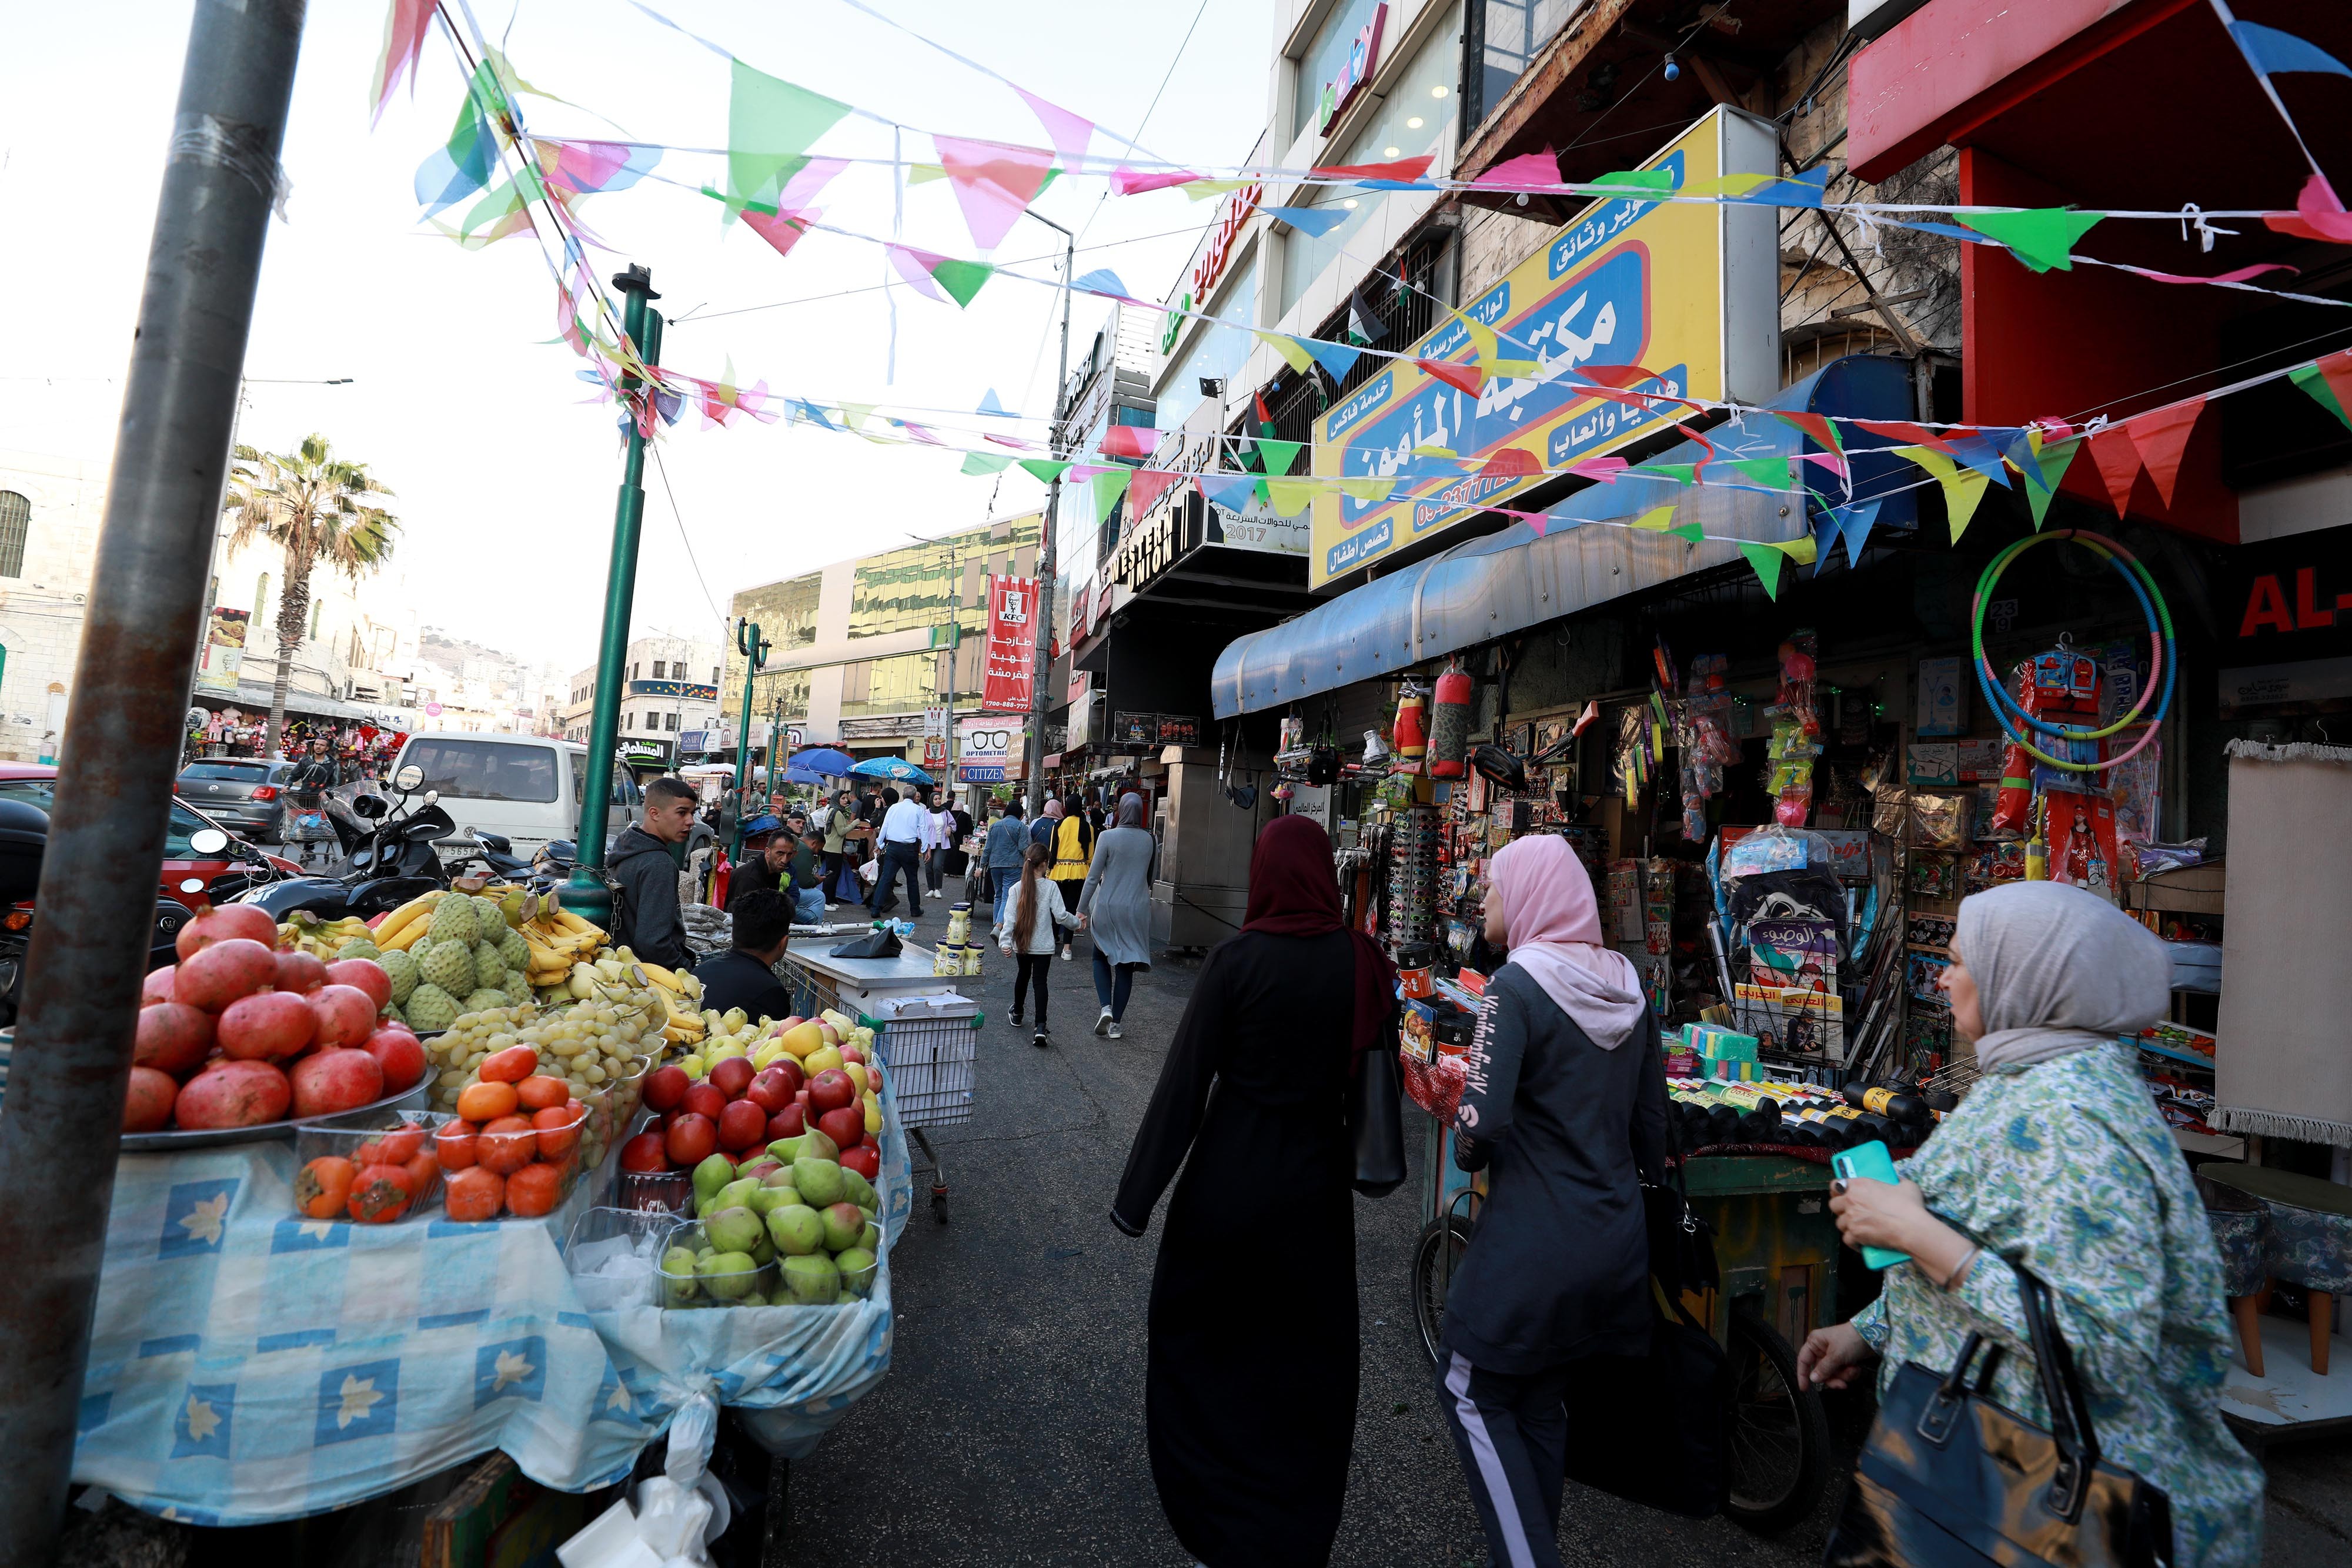 مقامات فلسطینی تاکید کردند:

خسارات گسترده به اقتصاد نابلس در پی ادامه محاصره صهیونیستی